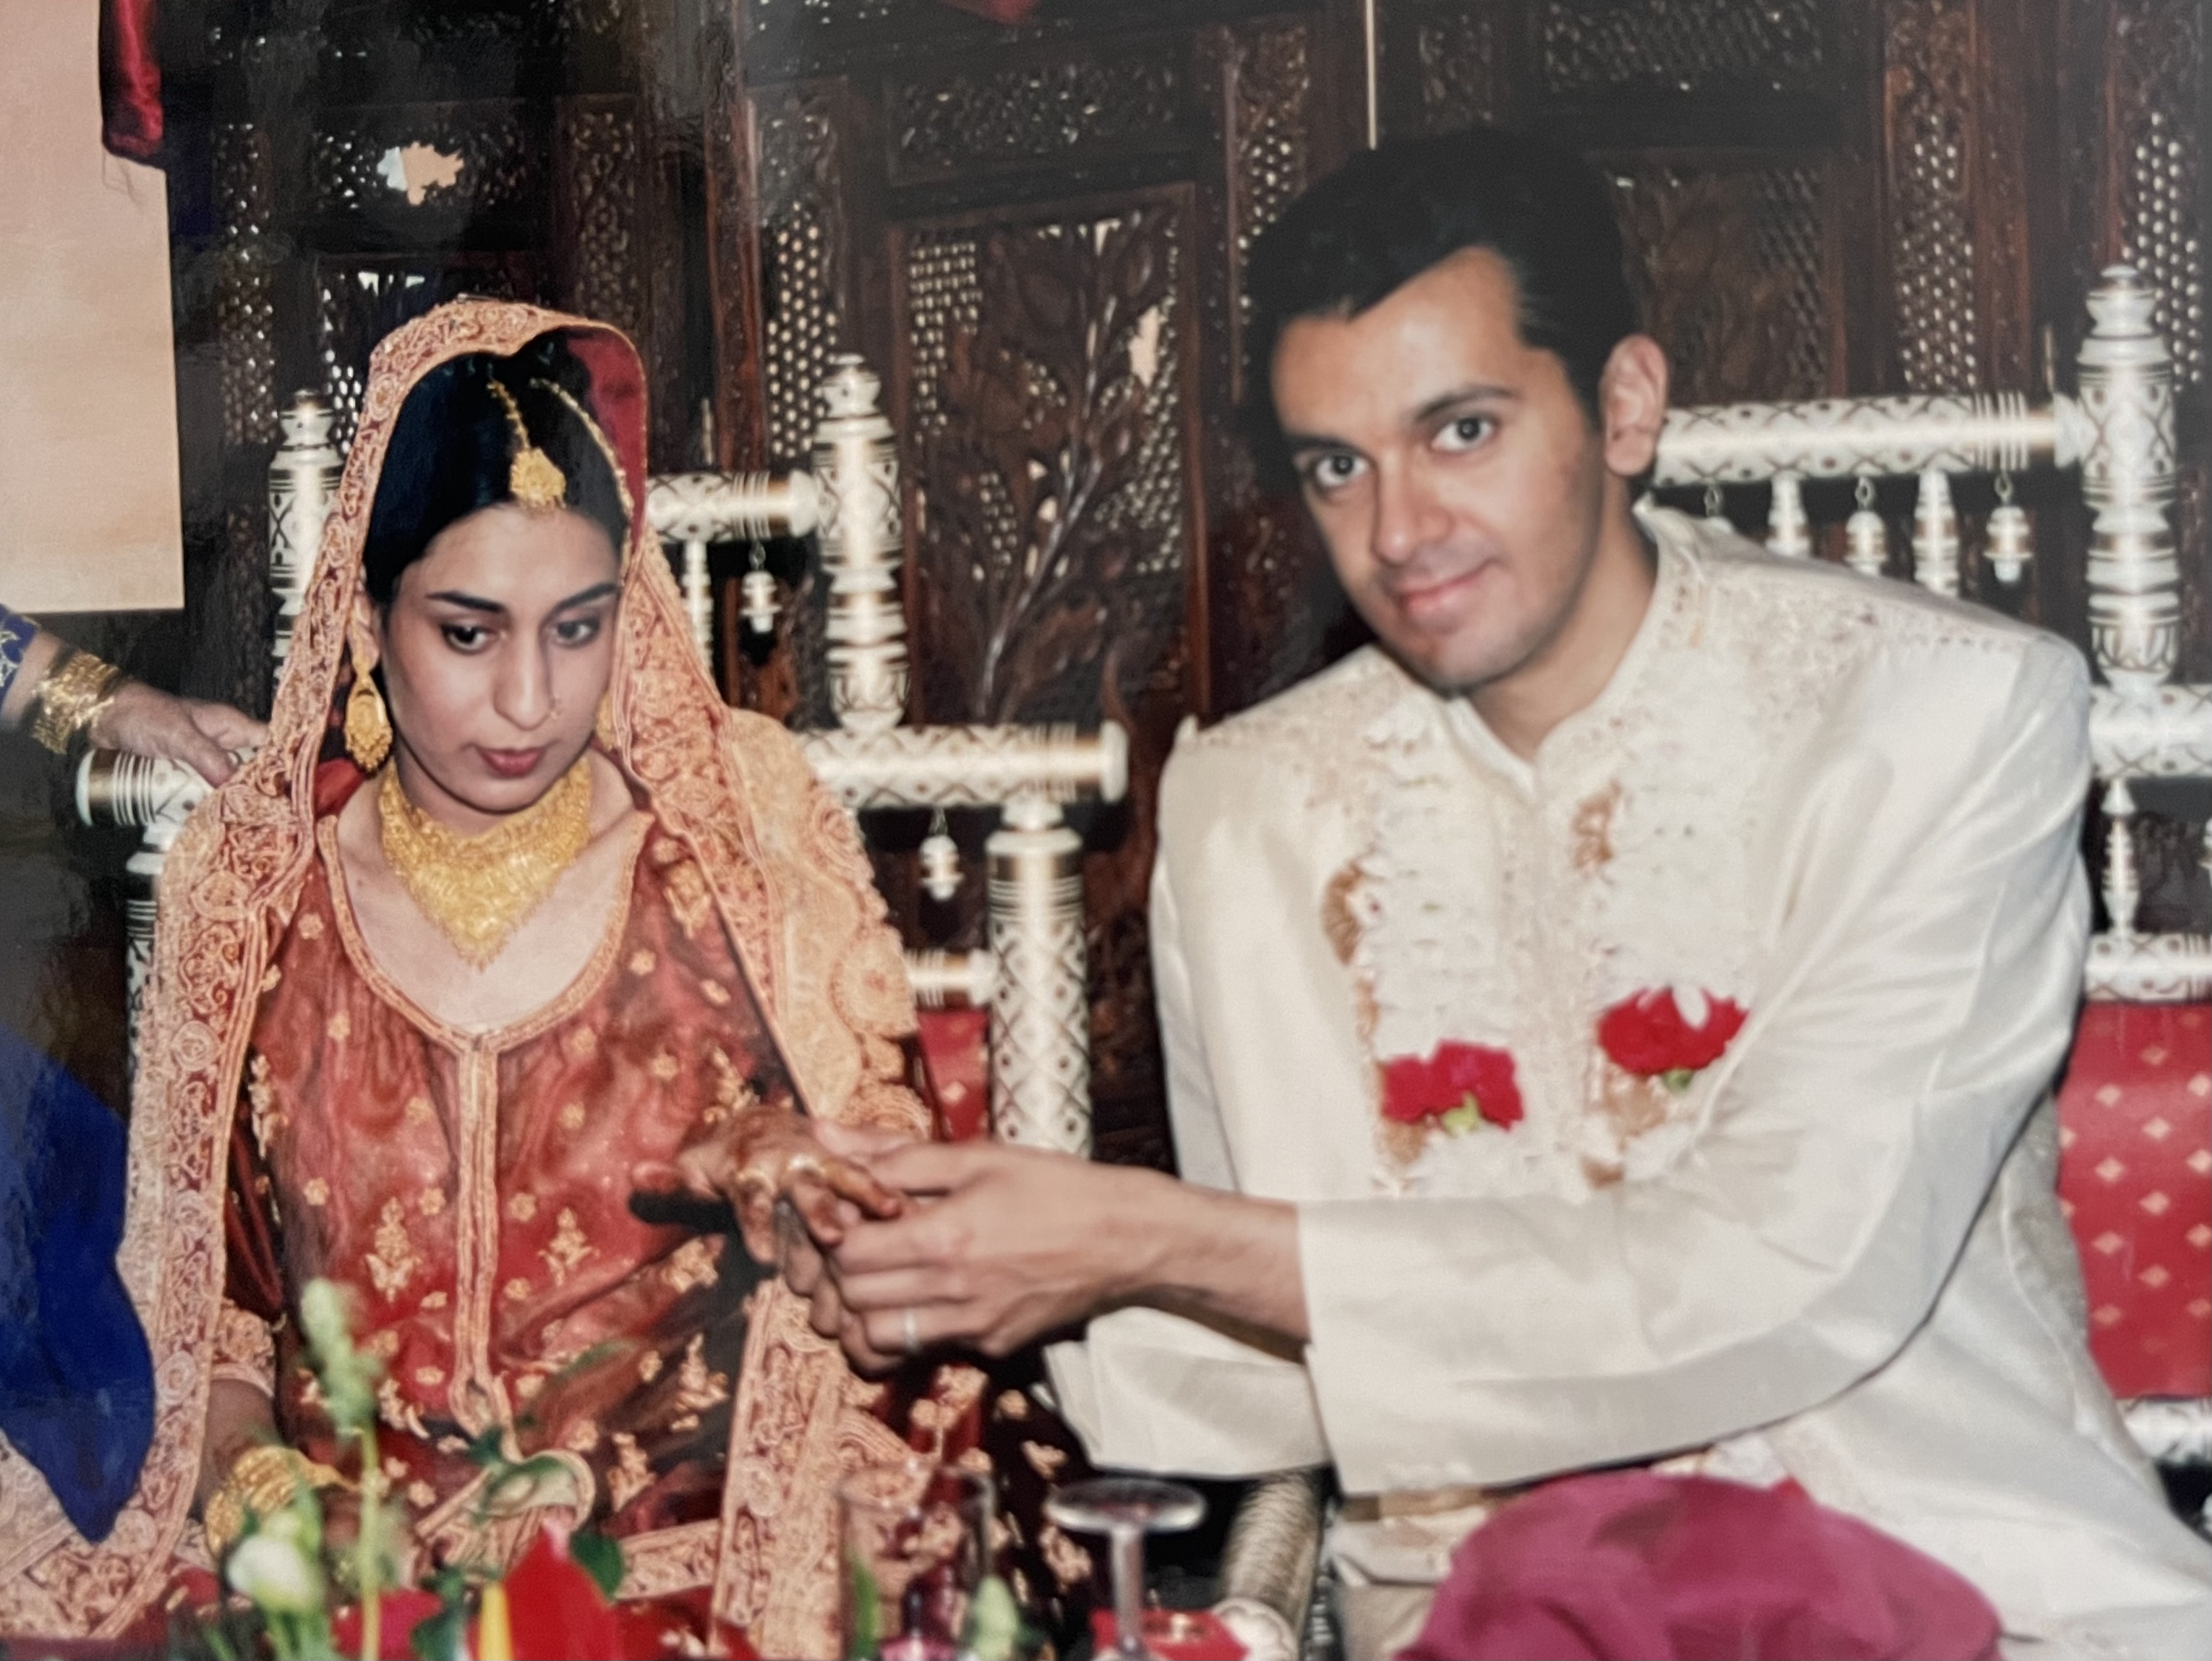 Salma and husband Nareman on their wedding day